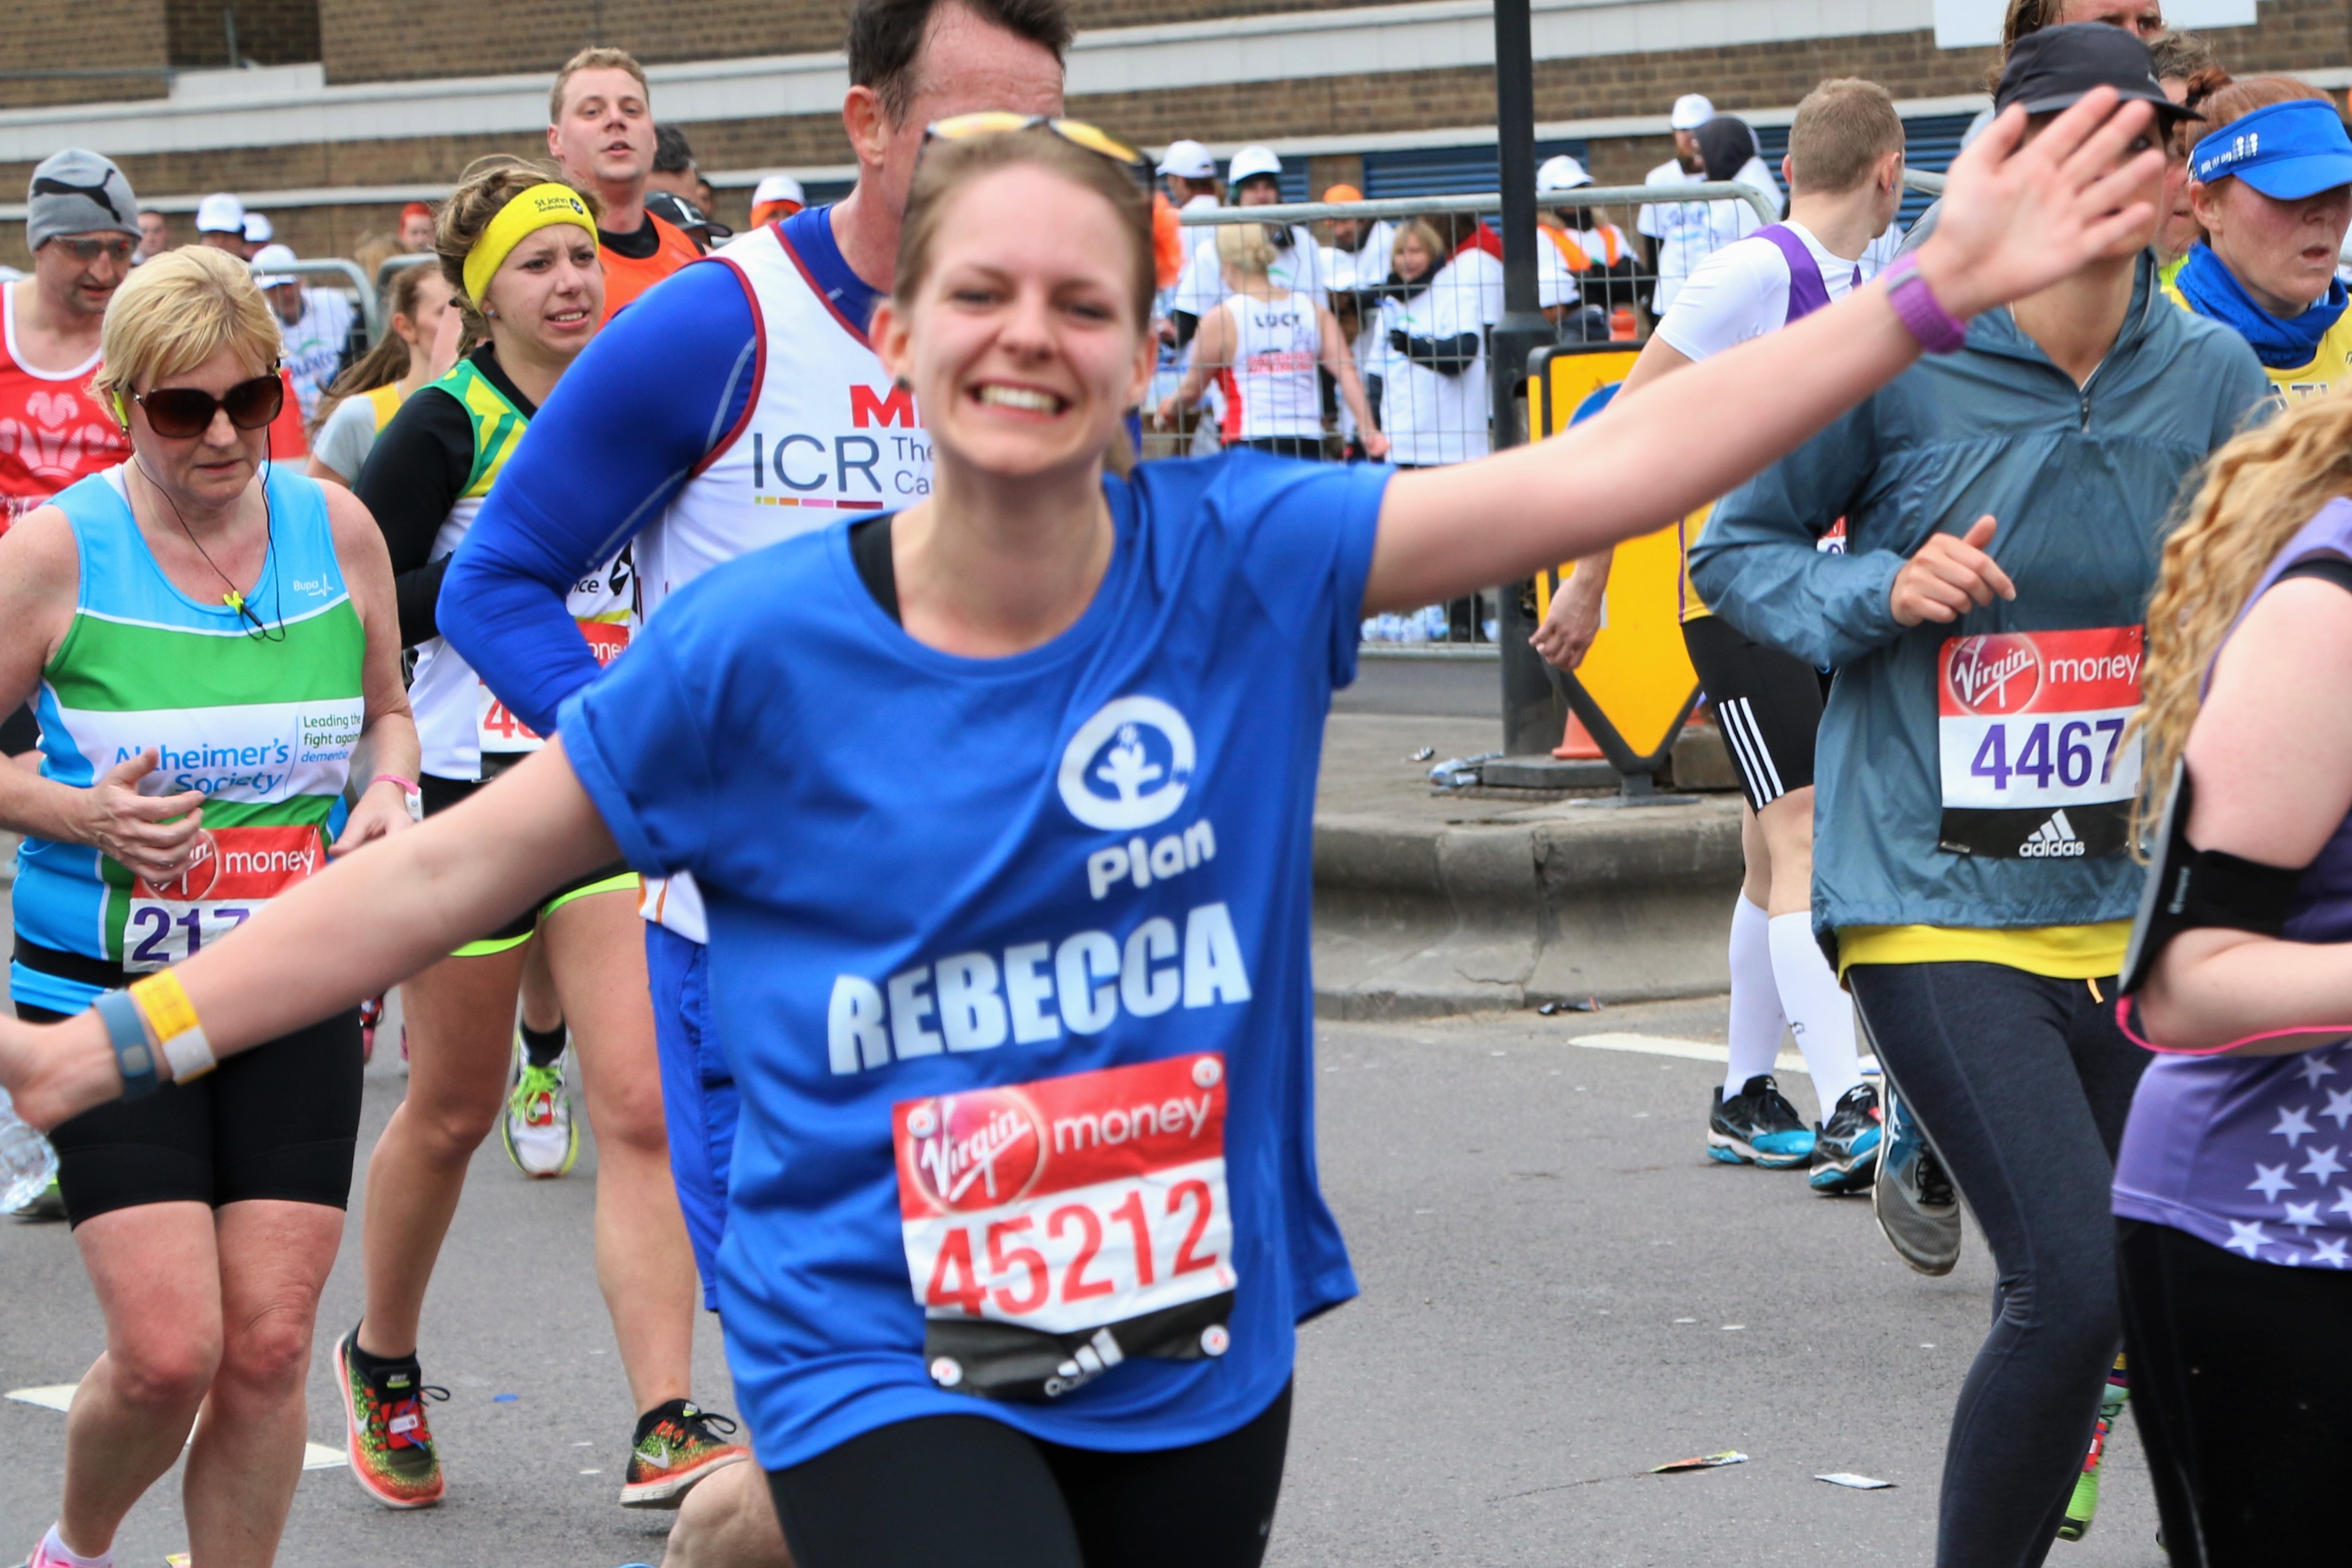 Rebecca Plan International UK runner